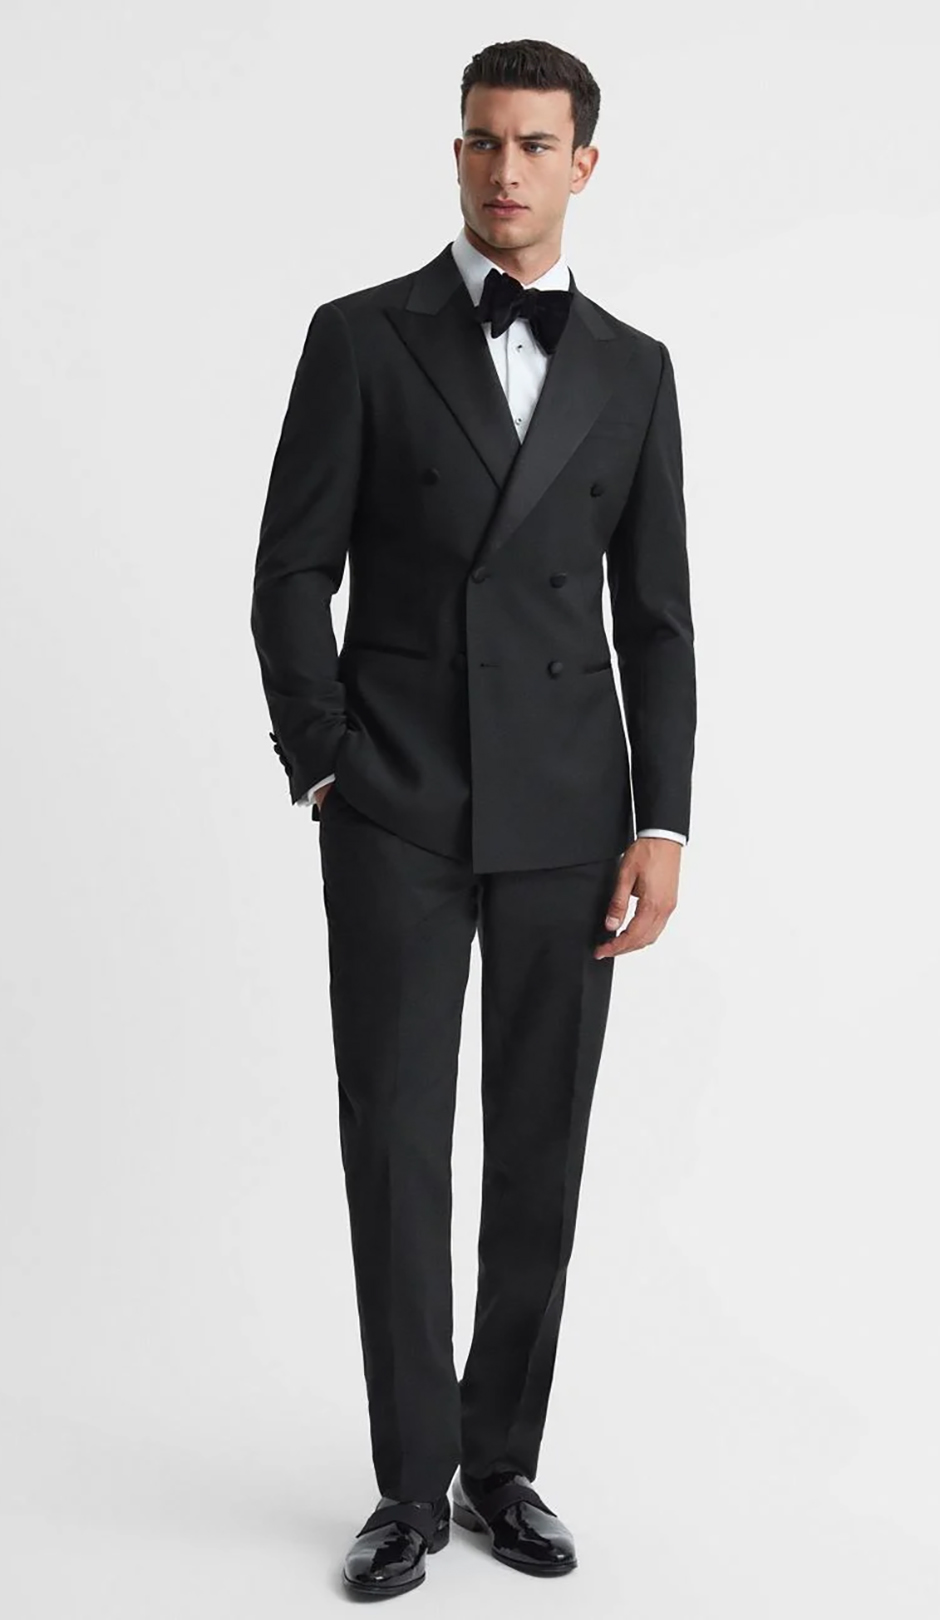 Modern black tie tuxedo for wedding suit for groom from Reiss